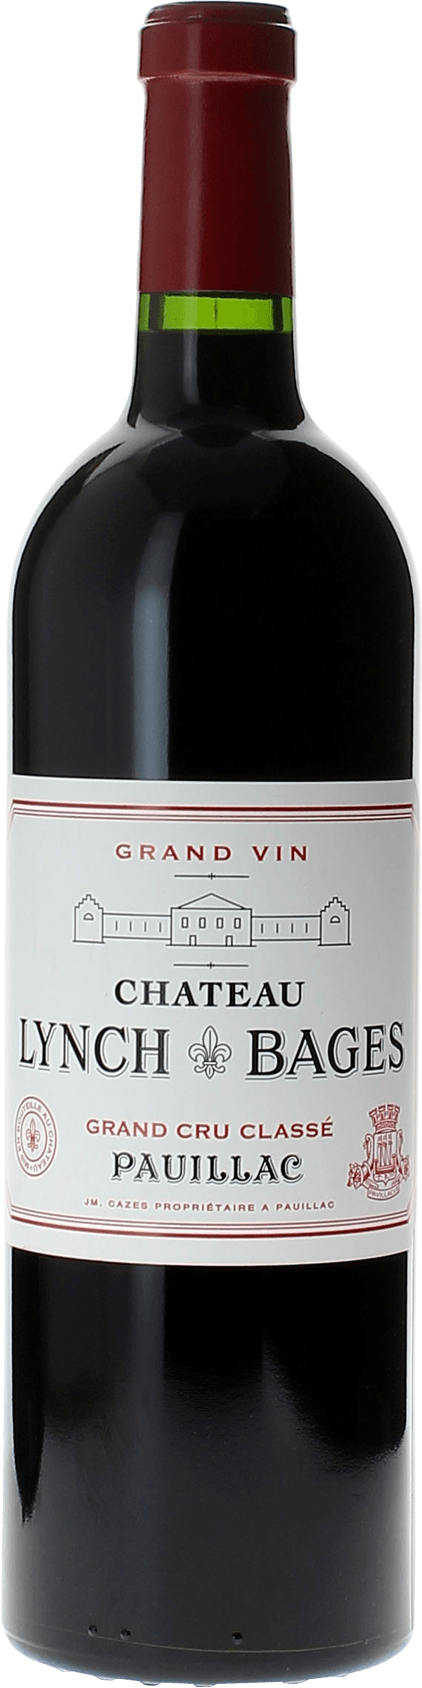 Lynch bages 1982 5 me Grand cru class Pauillac, Bordeaux rouge